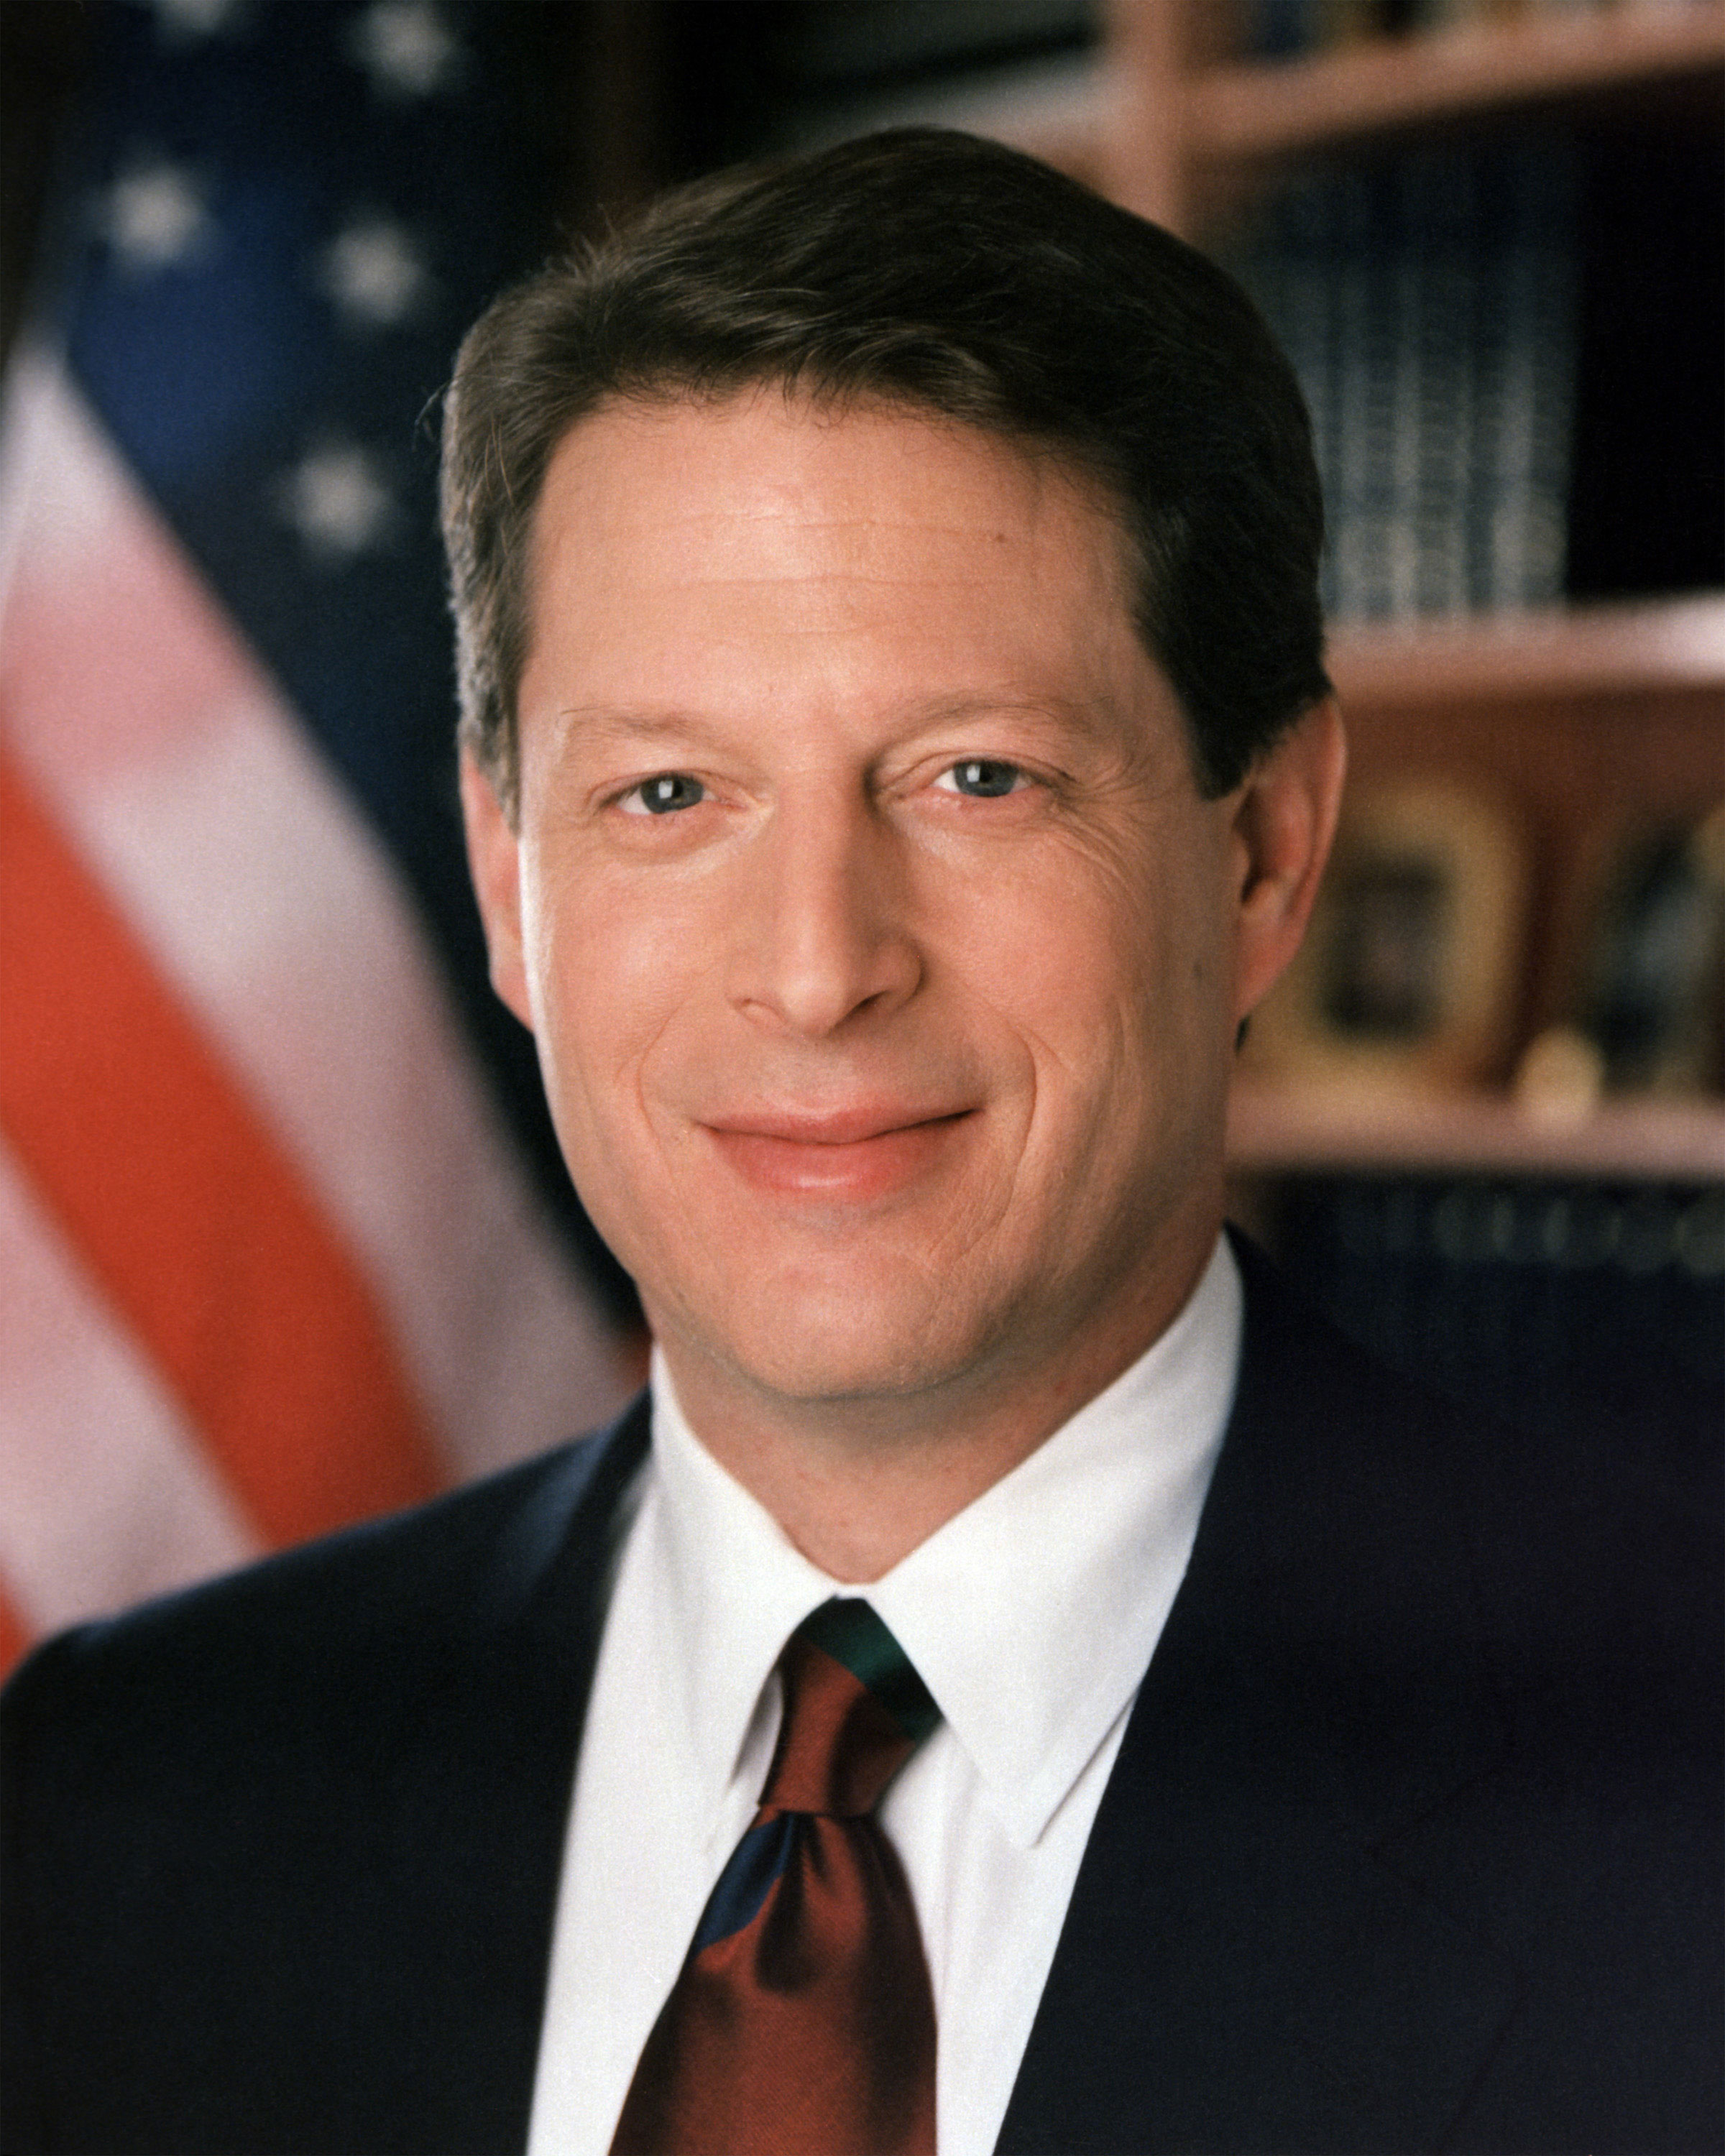 Al Gore (D-TN)